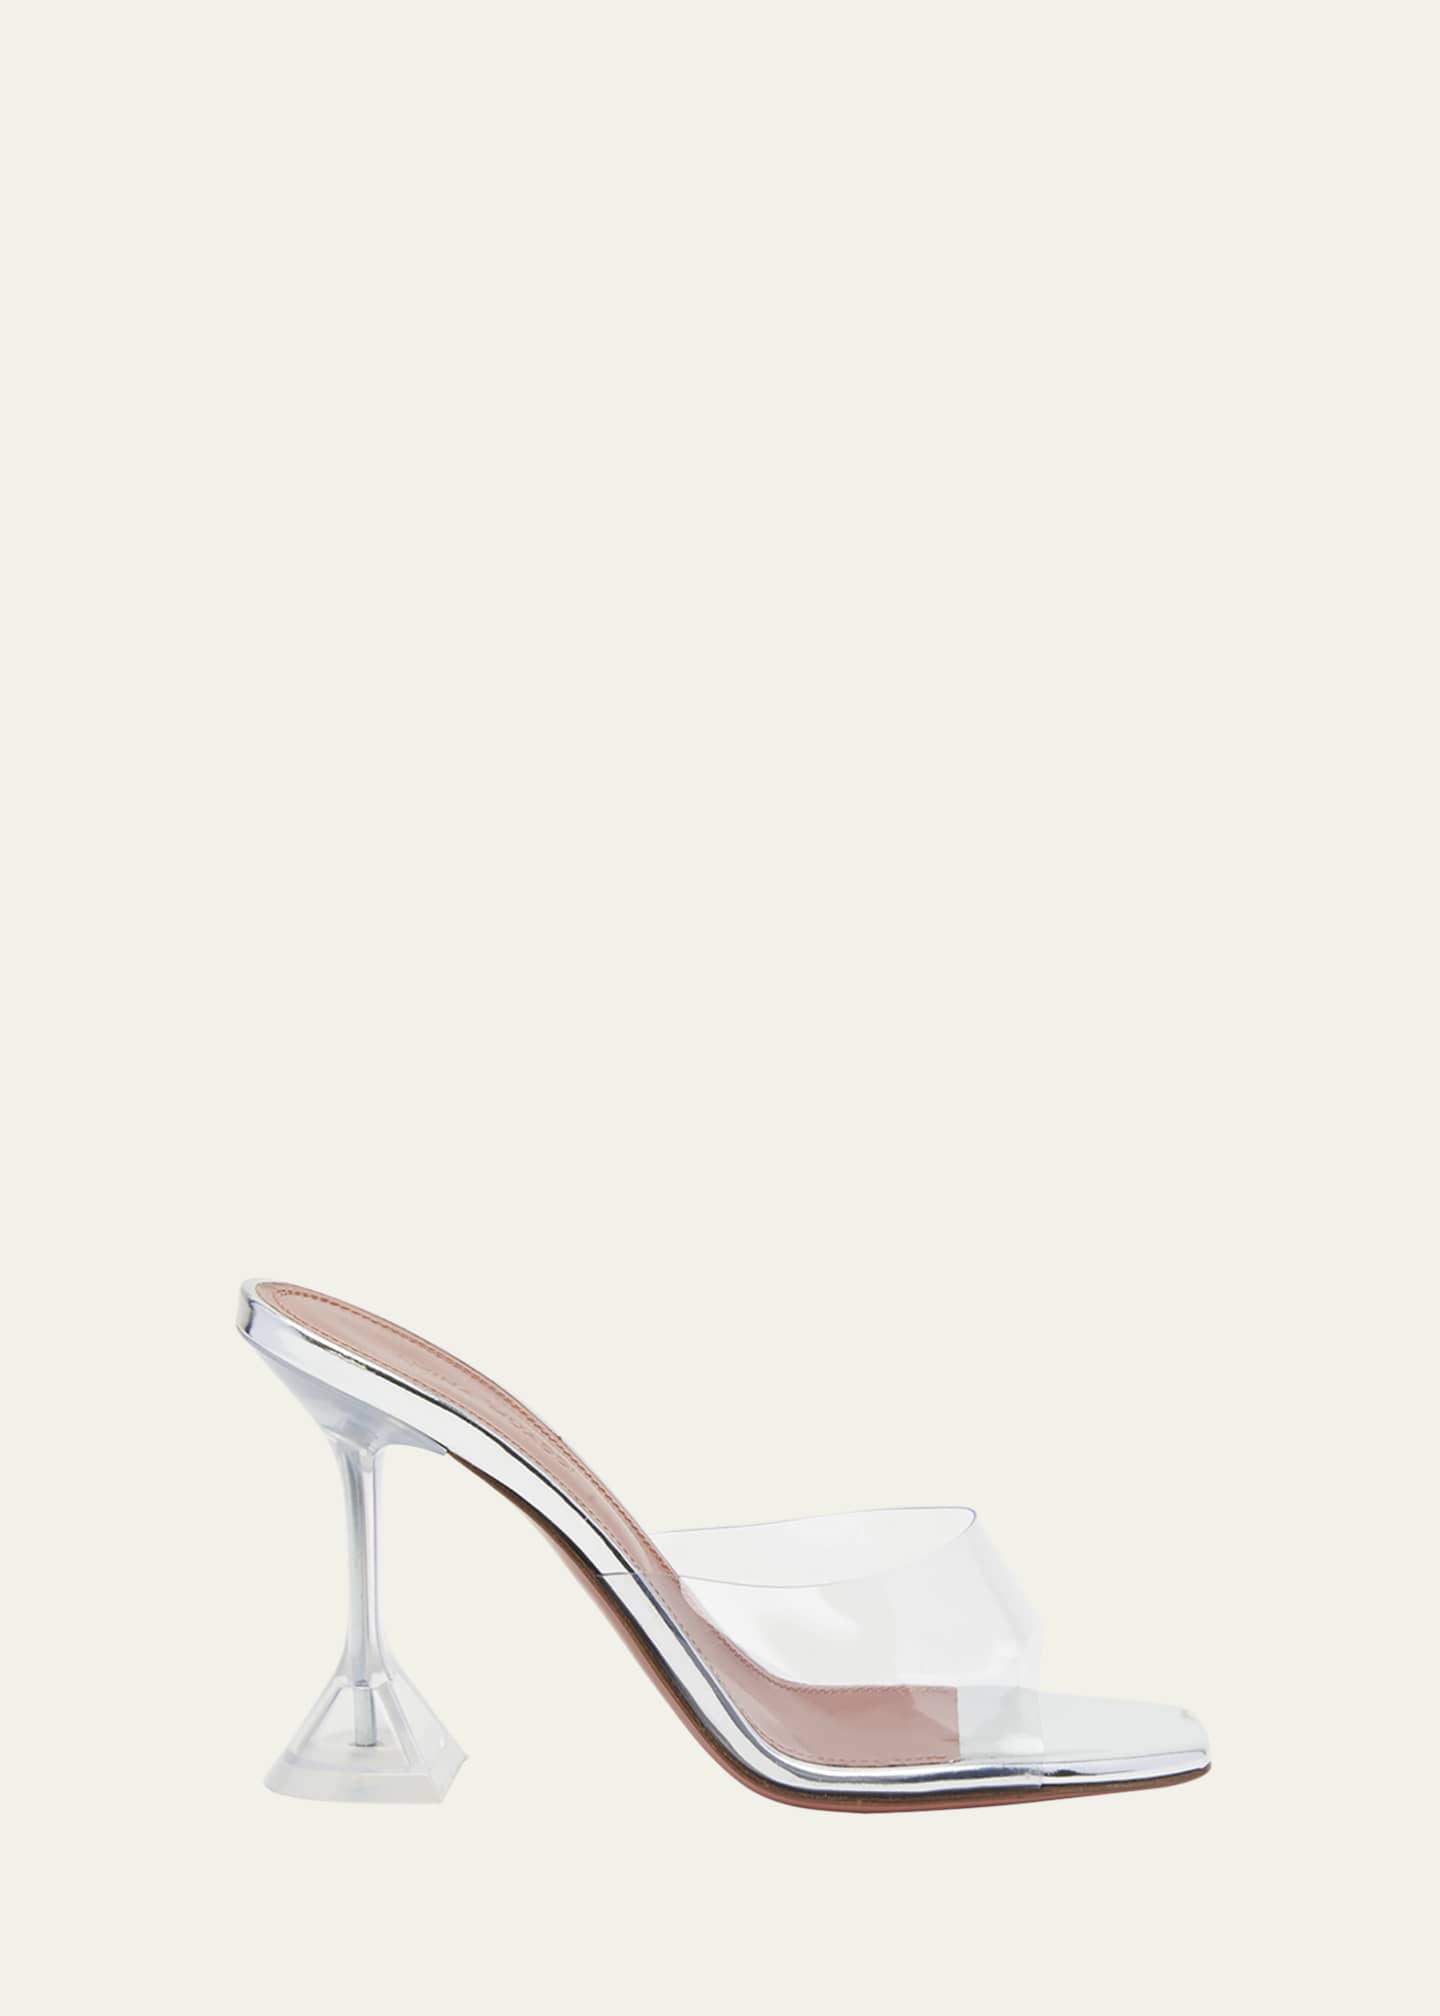 Amina Muaddi Lupita Glass Slide Sandals Image 1 of 5